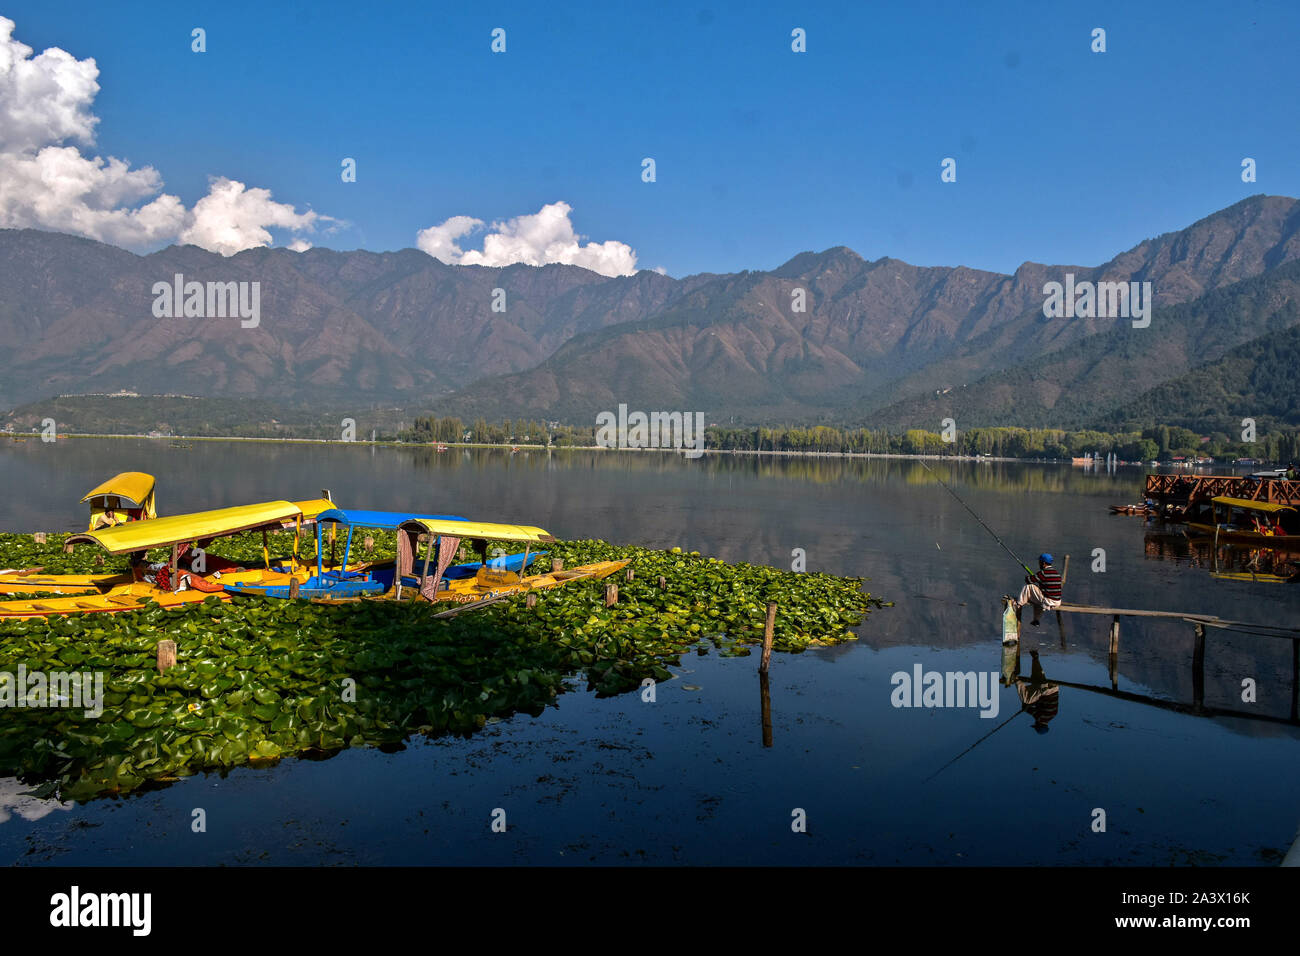 Un résident de la pêche sur le lac Dal pendant l'arrêt au Cachemire.vallée du Cachemire reste fermé pour le 67e jour consécutif à la suite de la suppression de l'article 370 par le gouvernement central qui accorde un statut spécial à Jammu-et-Cachemire. Cependant, les autorités affirment restrictions ont été assouplies dans la plupart des régions de la vallée du Cachemire. Banque D'Images